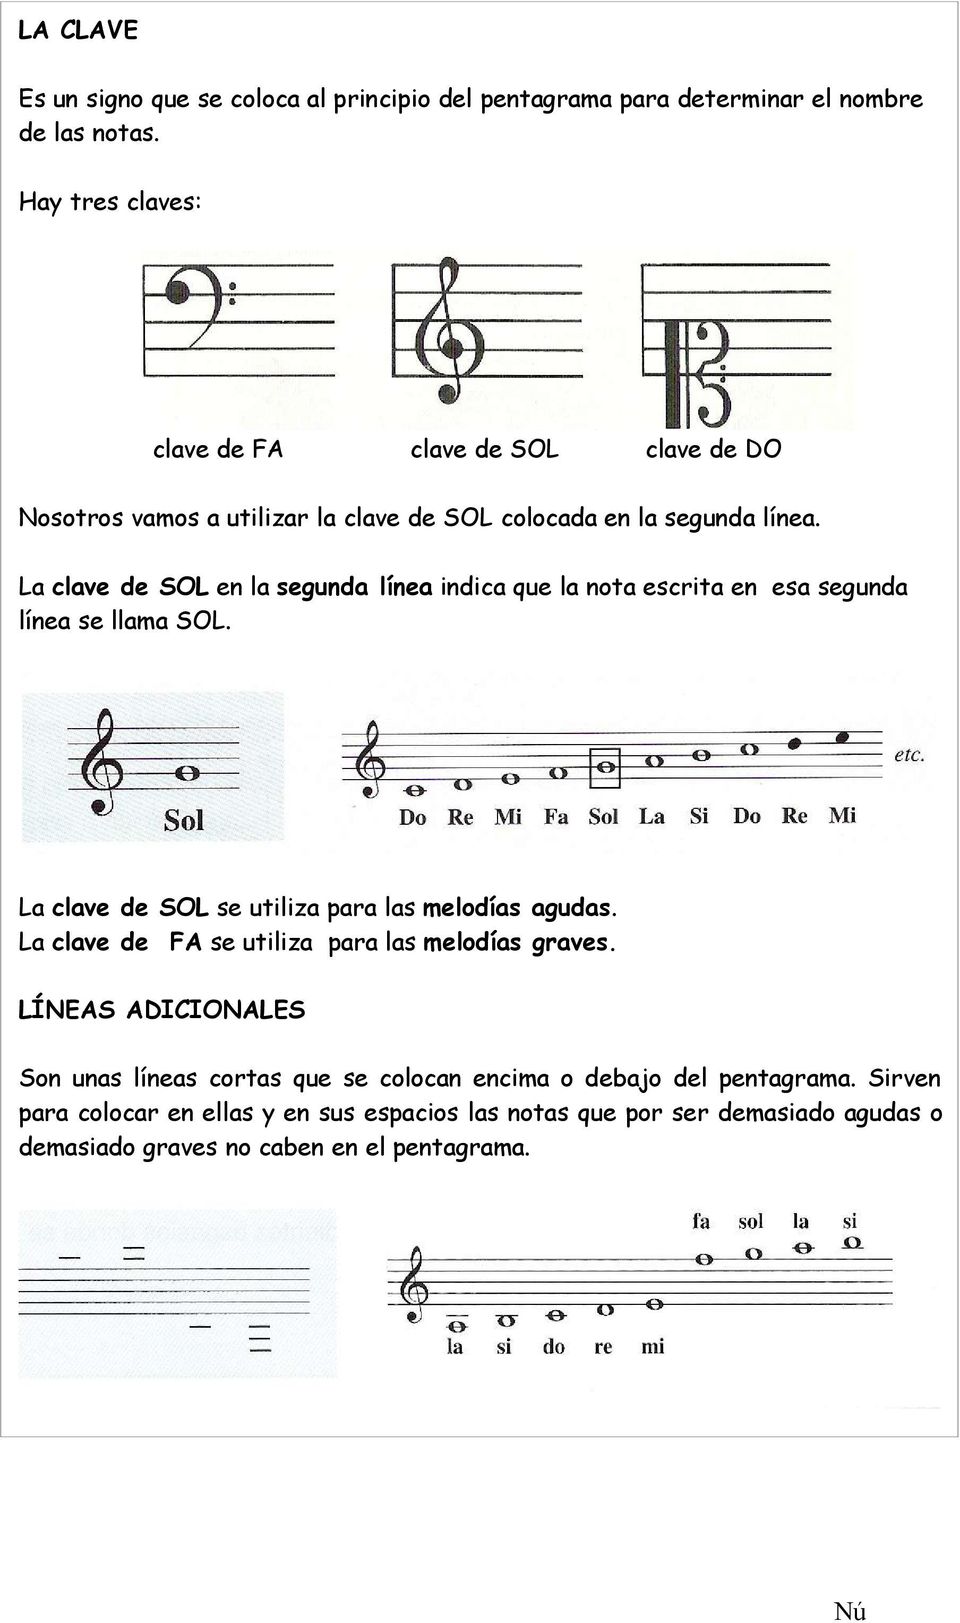 La clave de SOL en la segunda línea indica que la nota escrita en esa segunda línea se llama SOL. La clave de SOL se utiliza para las melodías agudas.